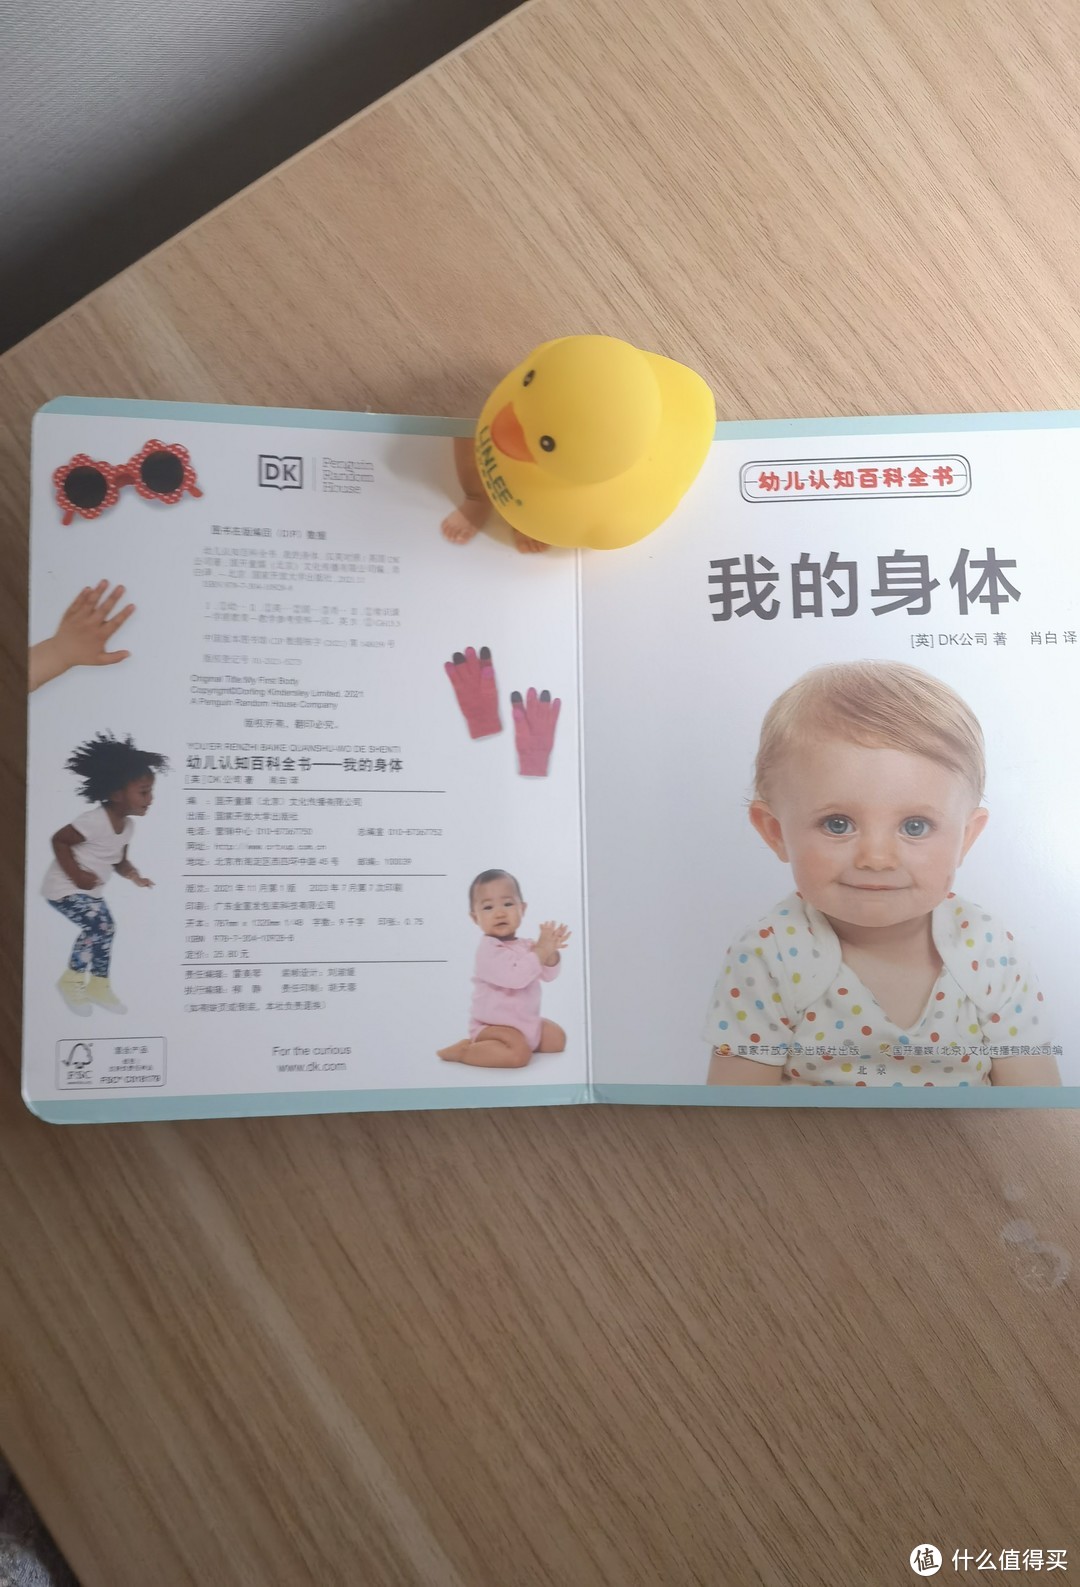 孩子见识世界的第一本书：《DK幼儿认知百科全书》